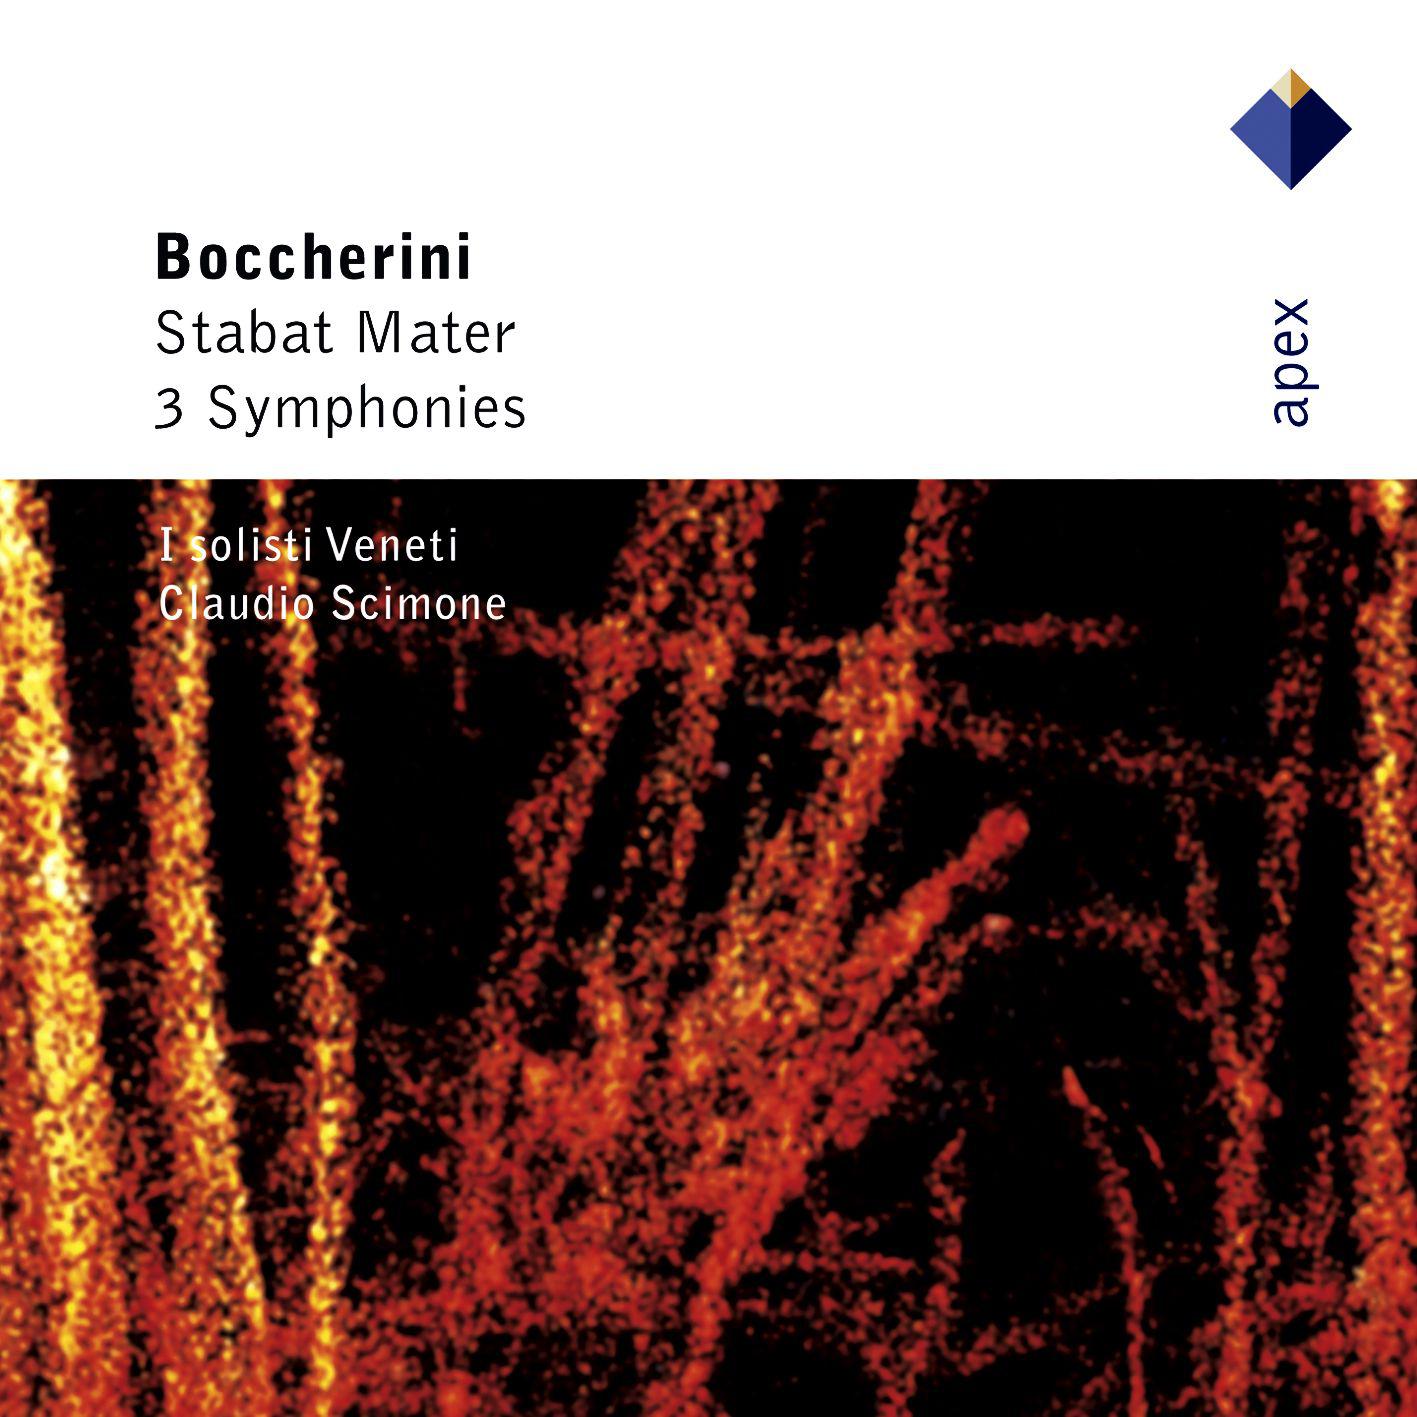 Boccherini : Symphony No.4 in A major Op.37 G518 : IV Allegro, ma non presto